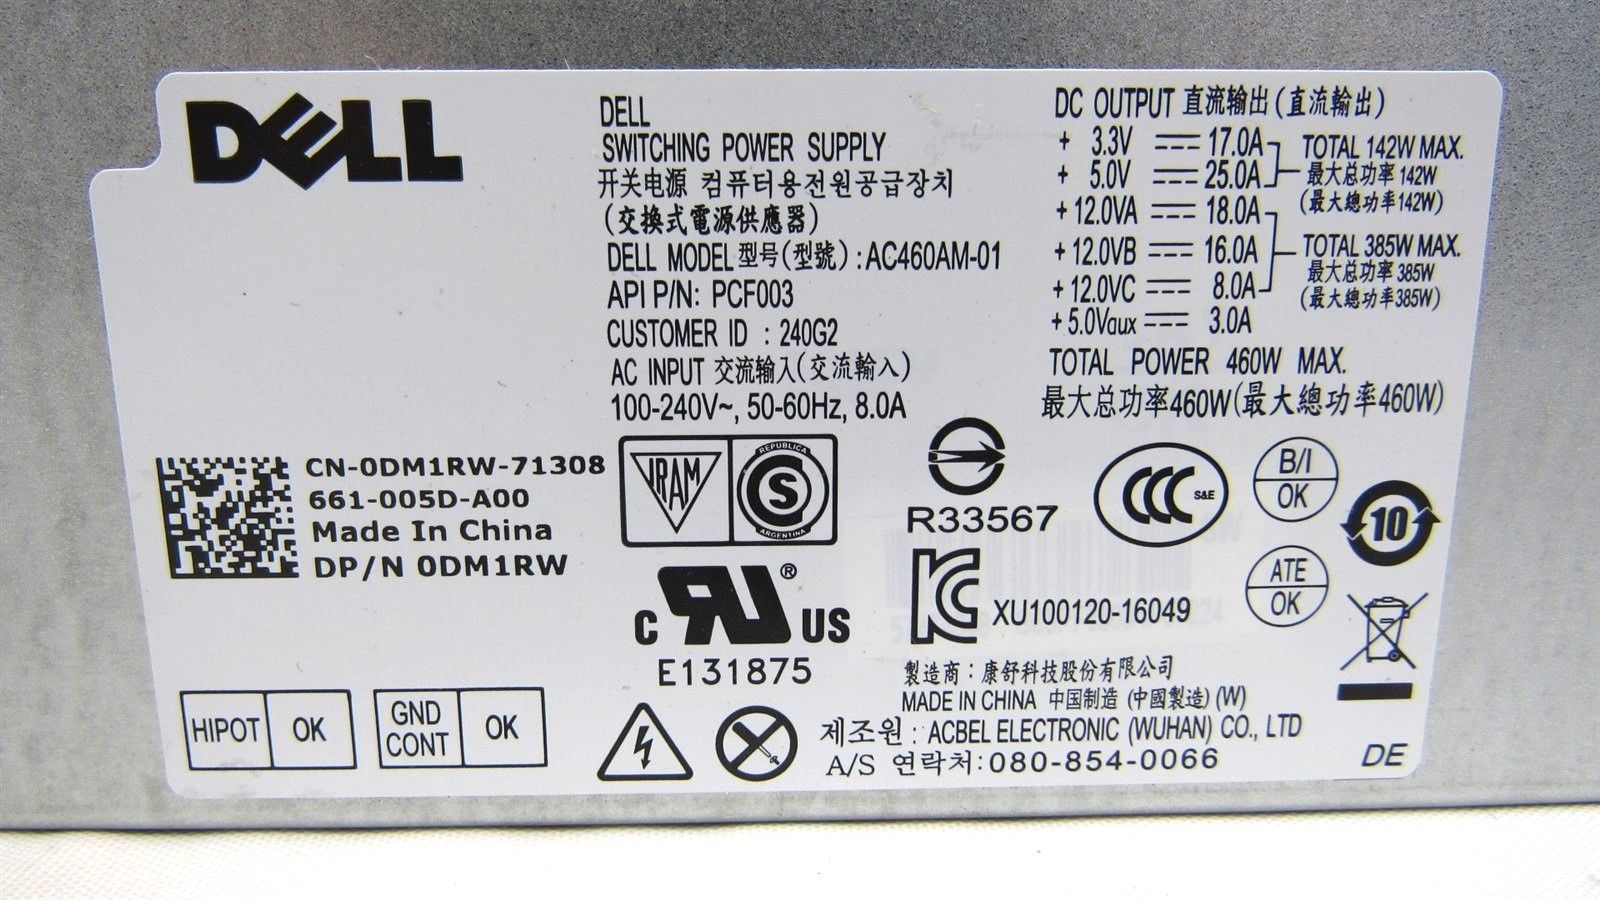 Genuine Dell XPS 8500 8700 8300 9000 Power Supply 460W AC460AM-01 DM1RW  0DM1RW